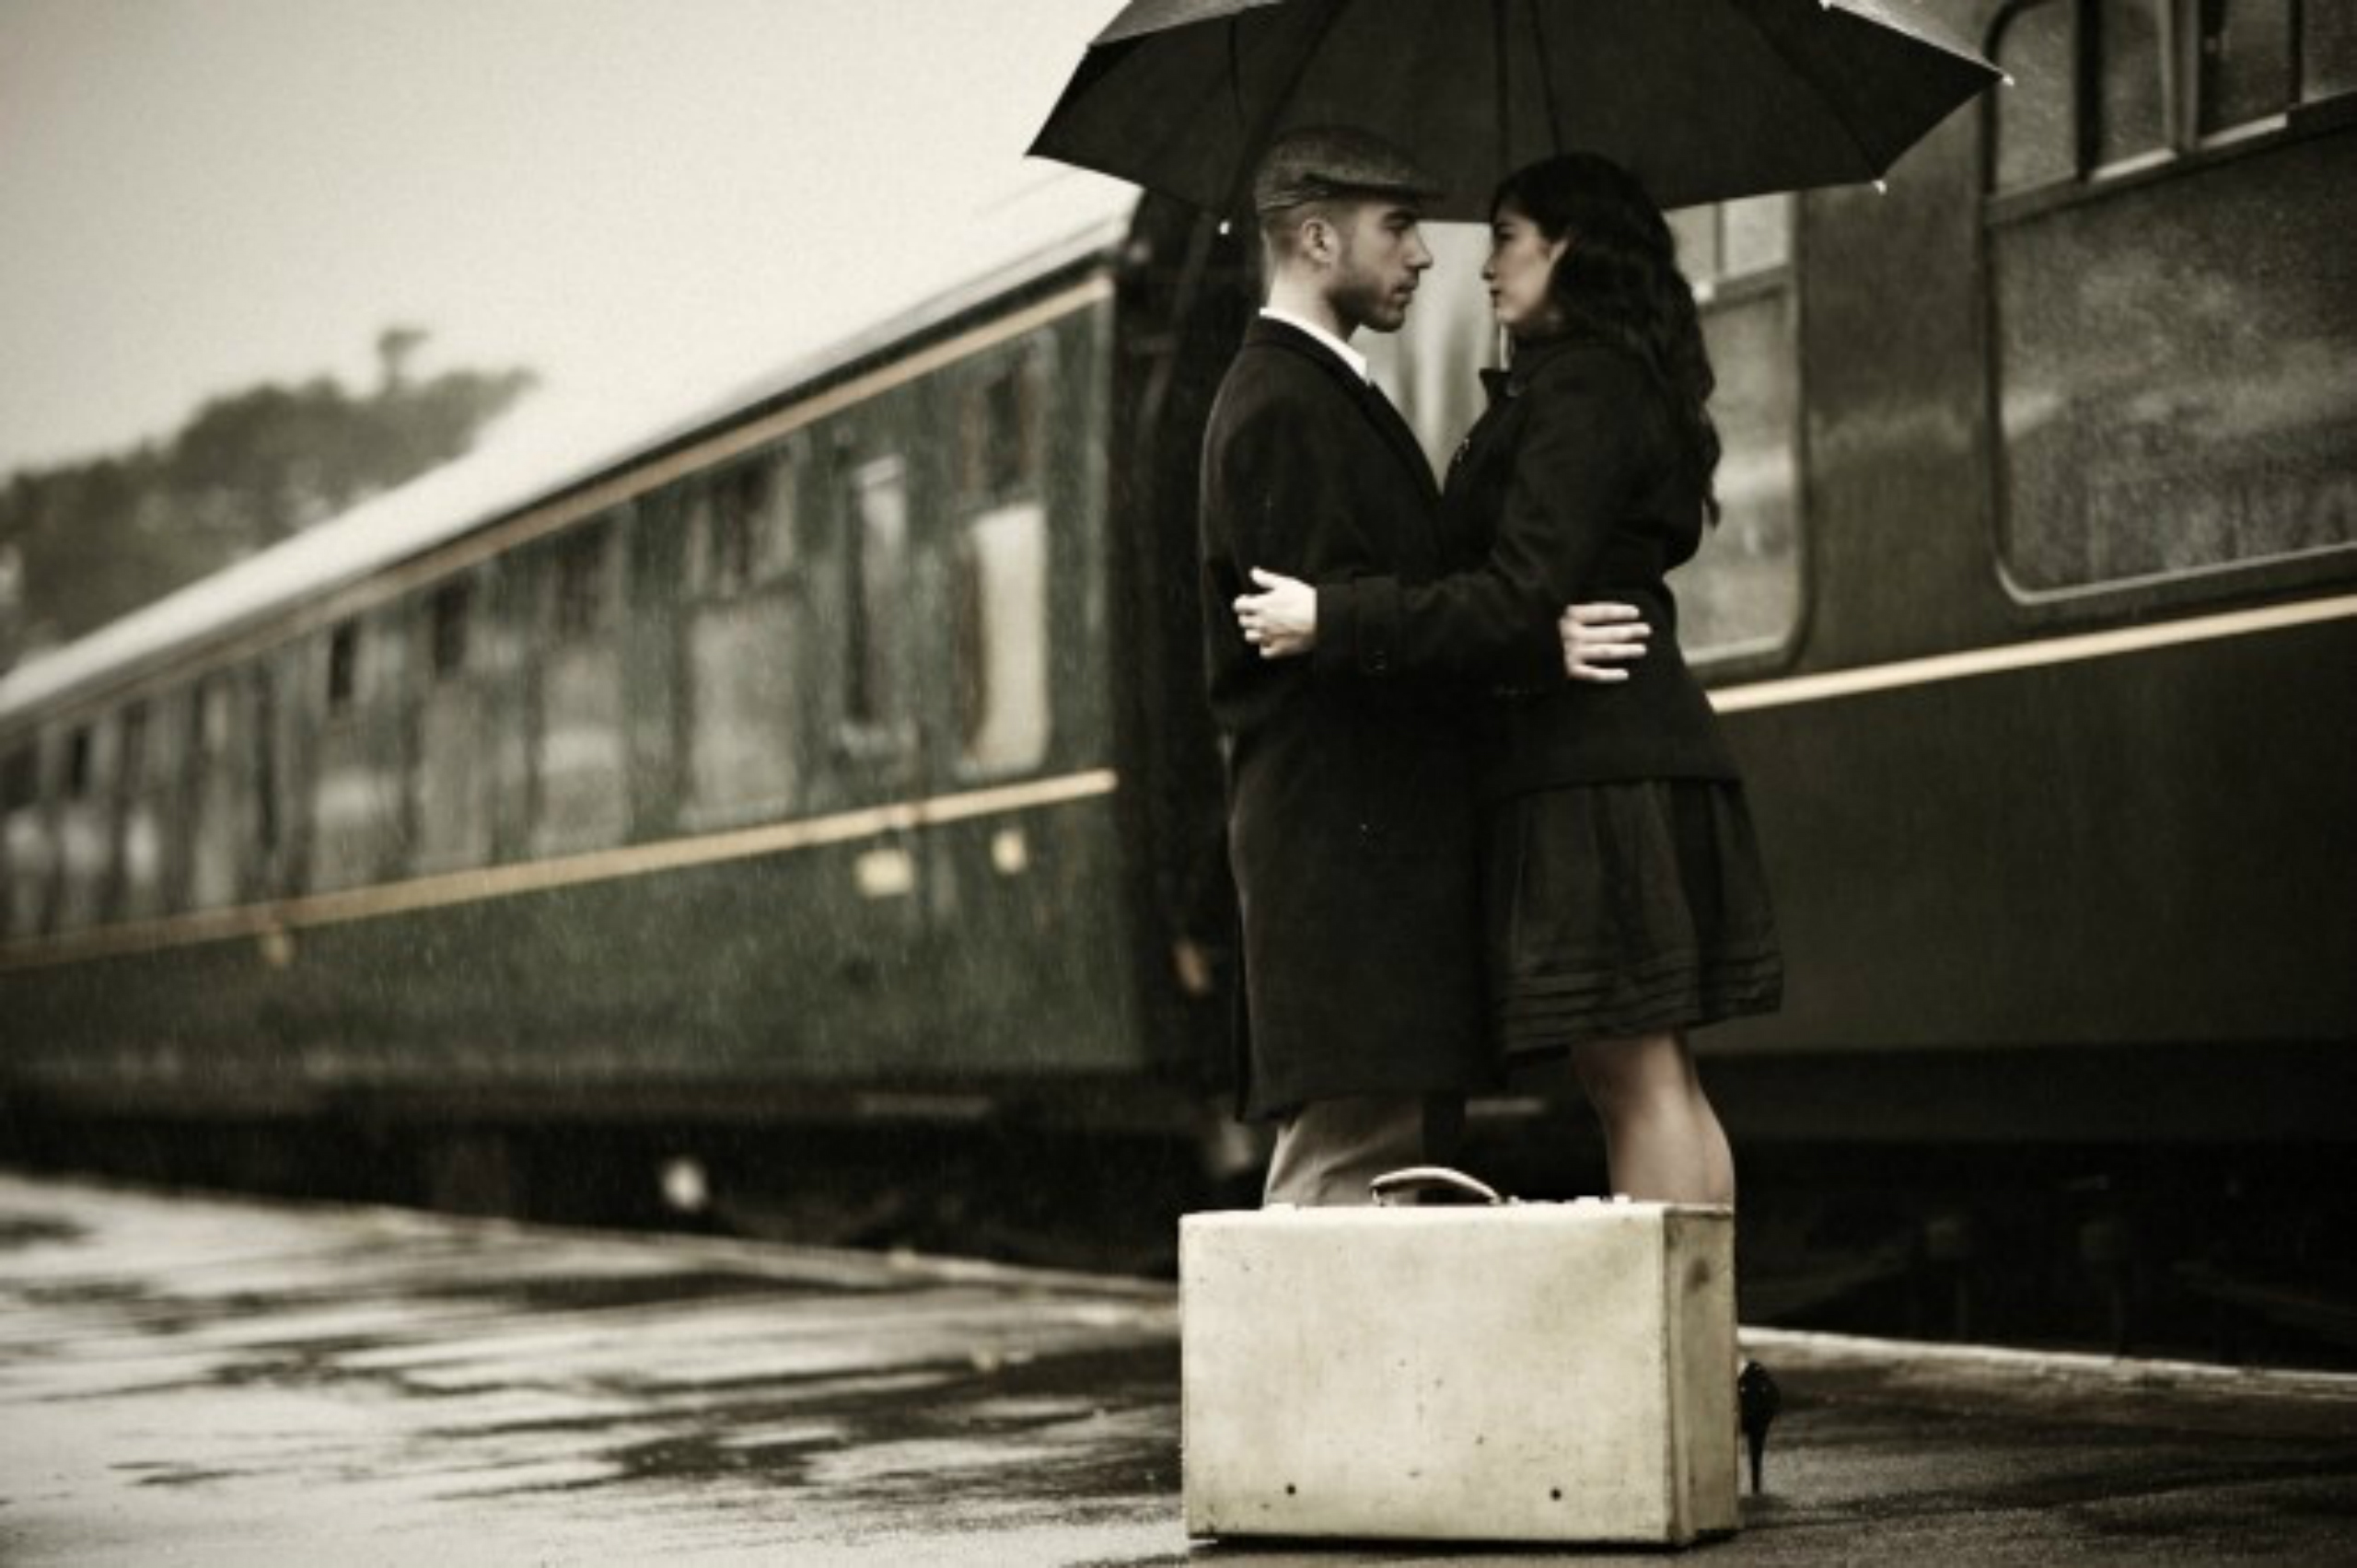 Расстались надолго. Встреча на вокзале. Расставание на вокзале. Поцелуй на вокзале. Парень и девушка на вокзале.